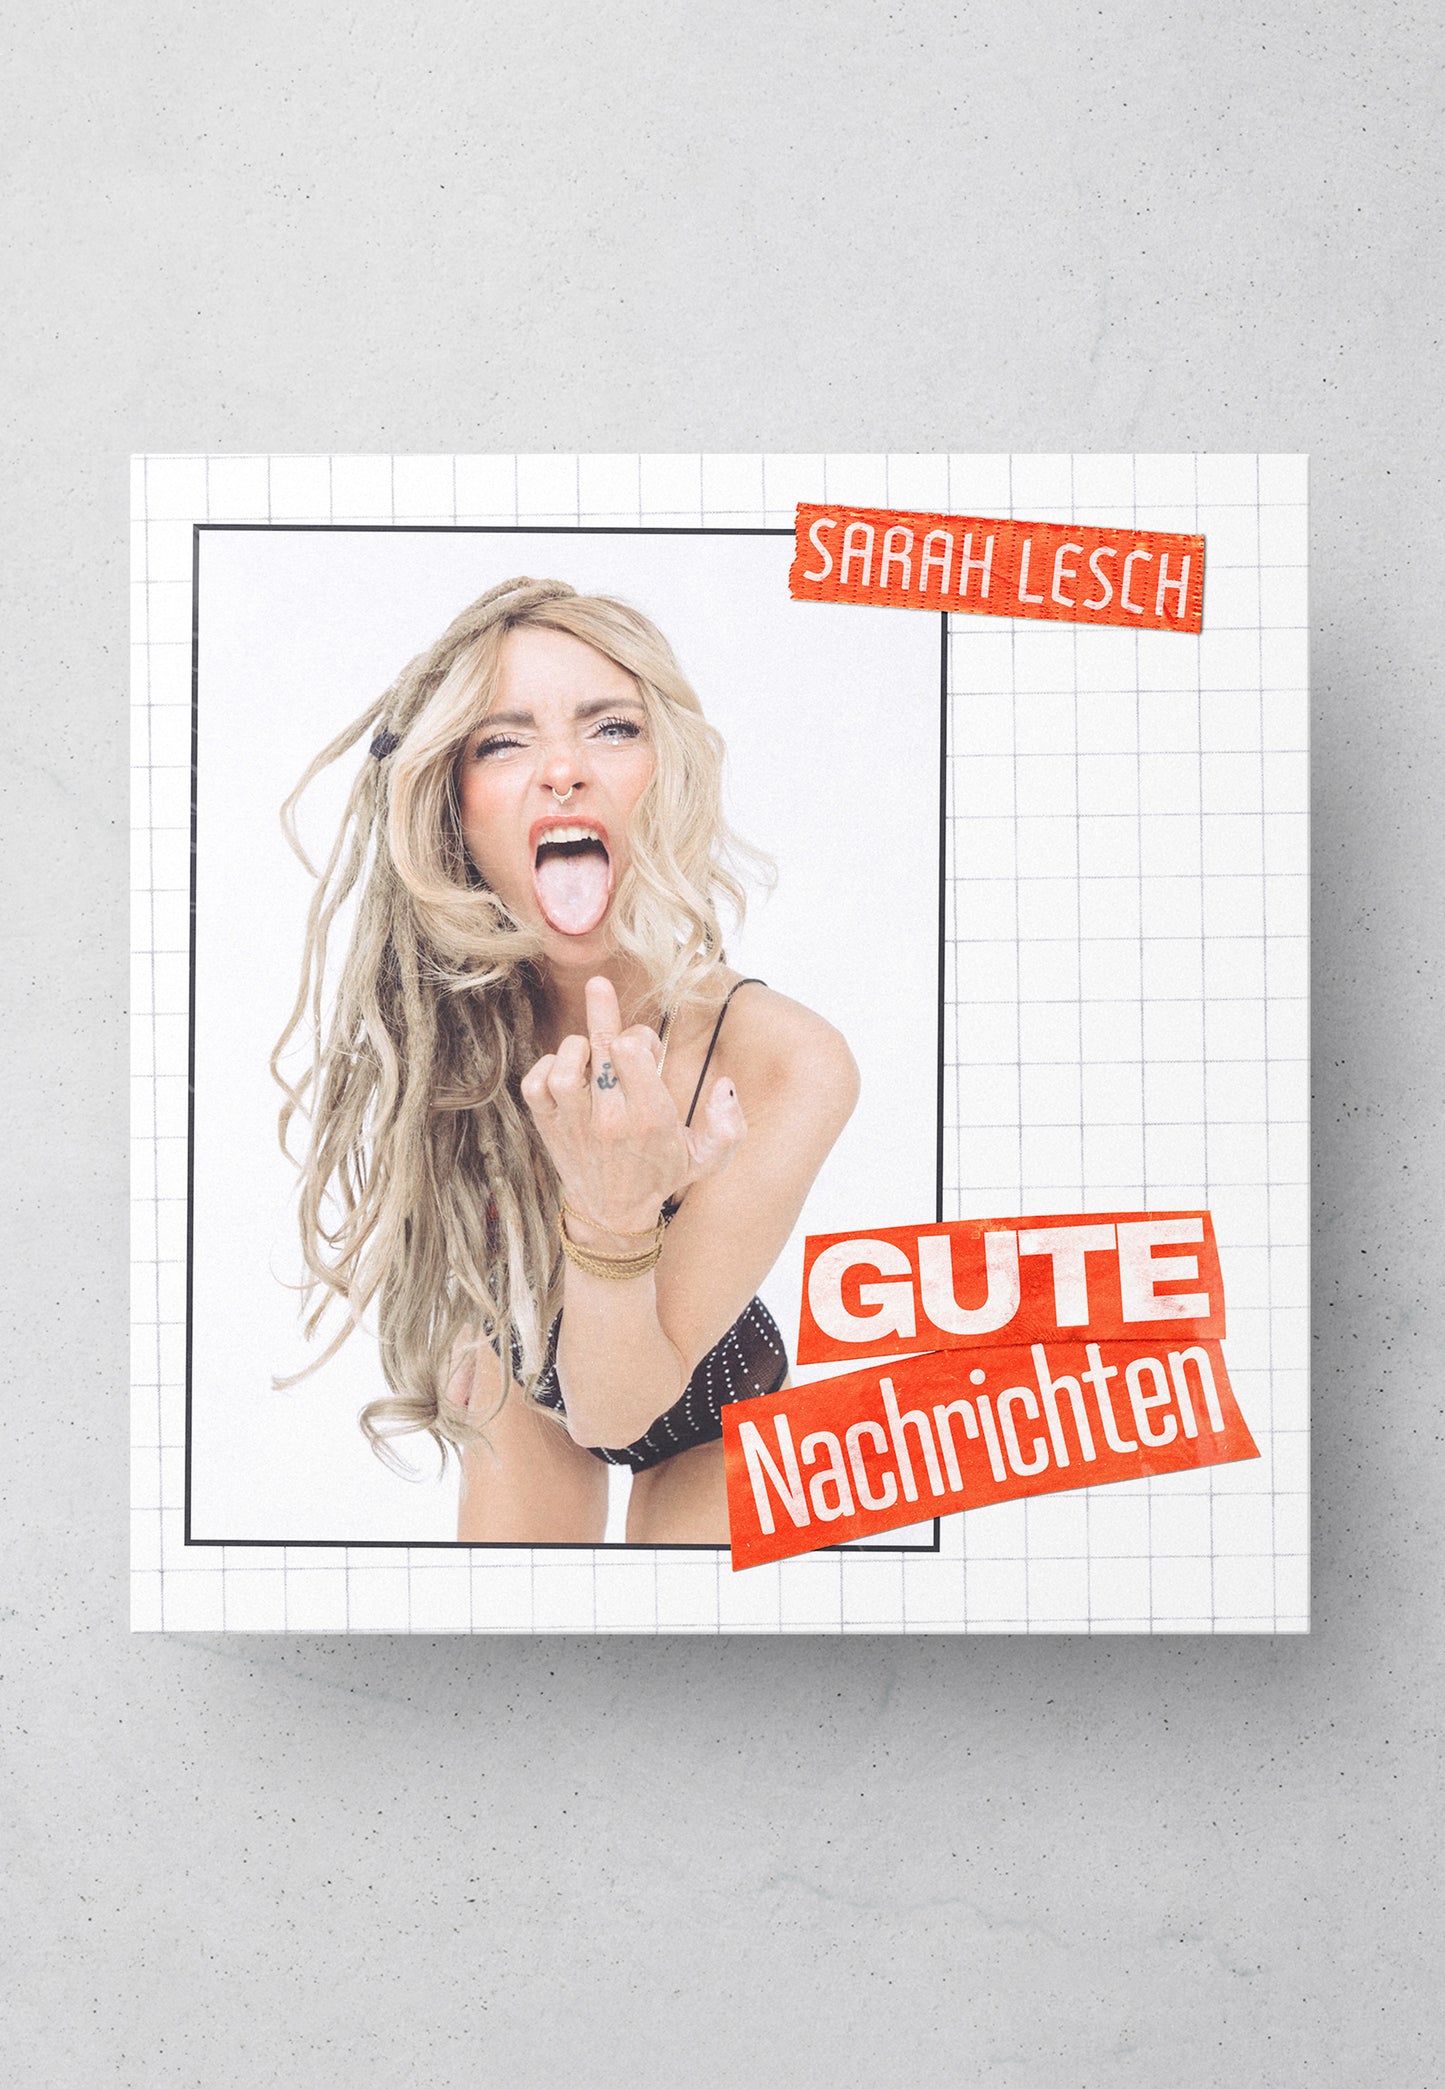 Sarah Lesch - Gute Nachrichten - Vinyl